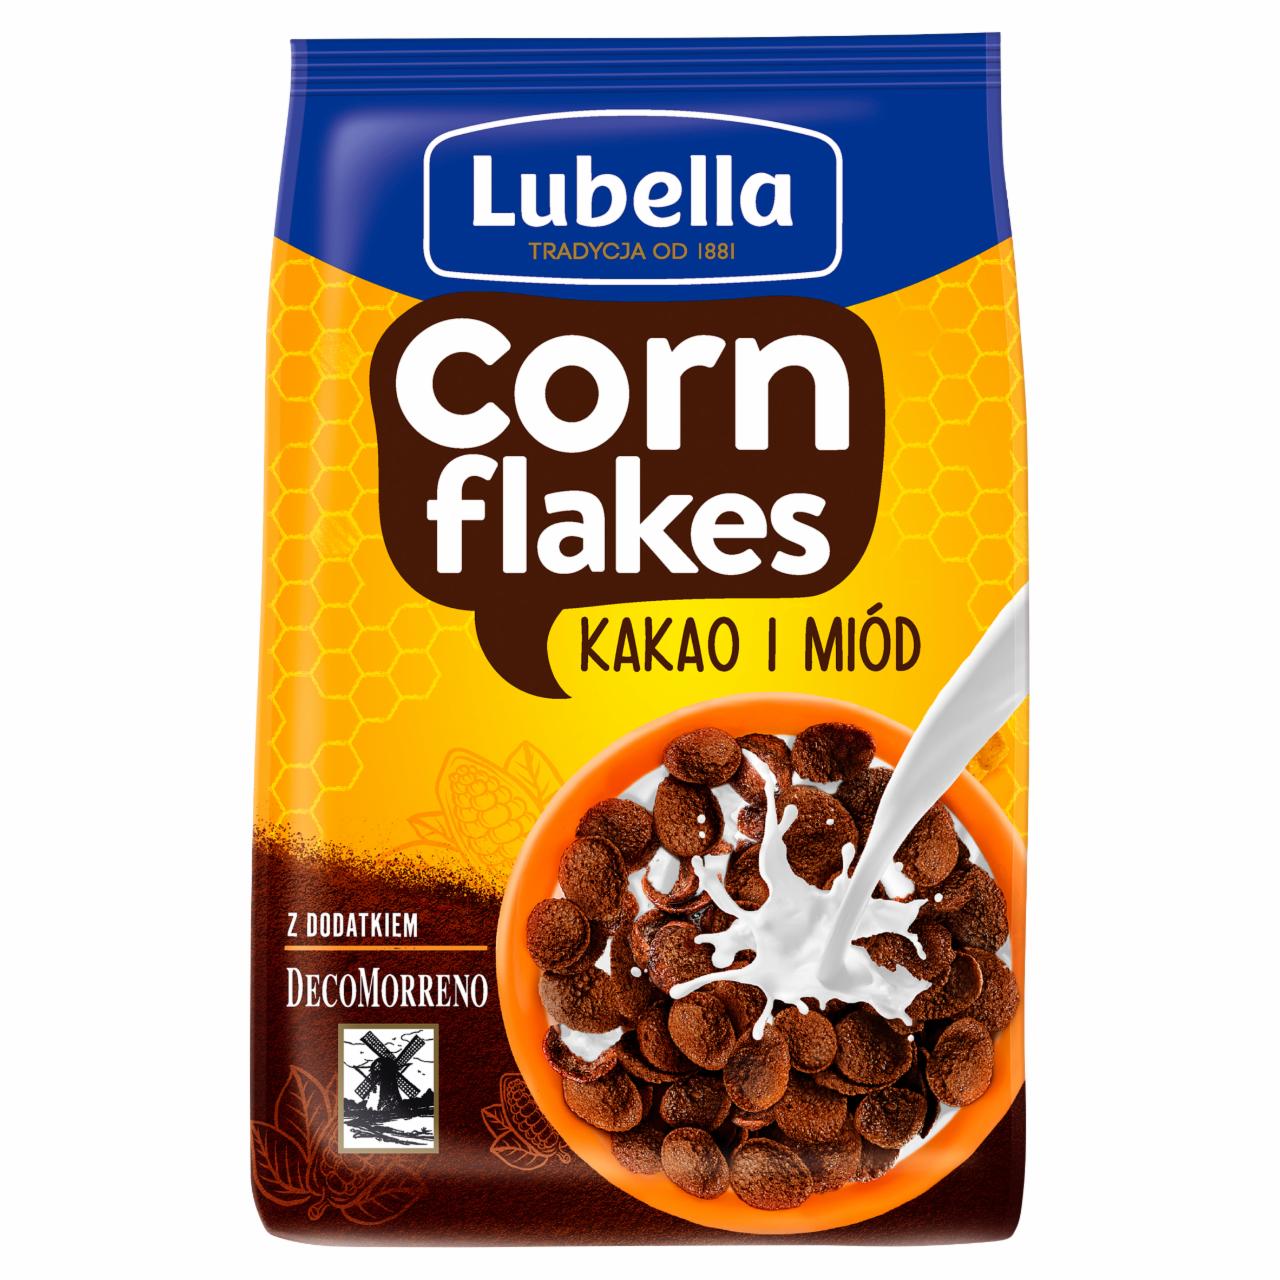 Zdjęcia - Lubella Corn Flakes Płatki kukurydziane kakao i miód 400 g